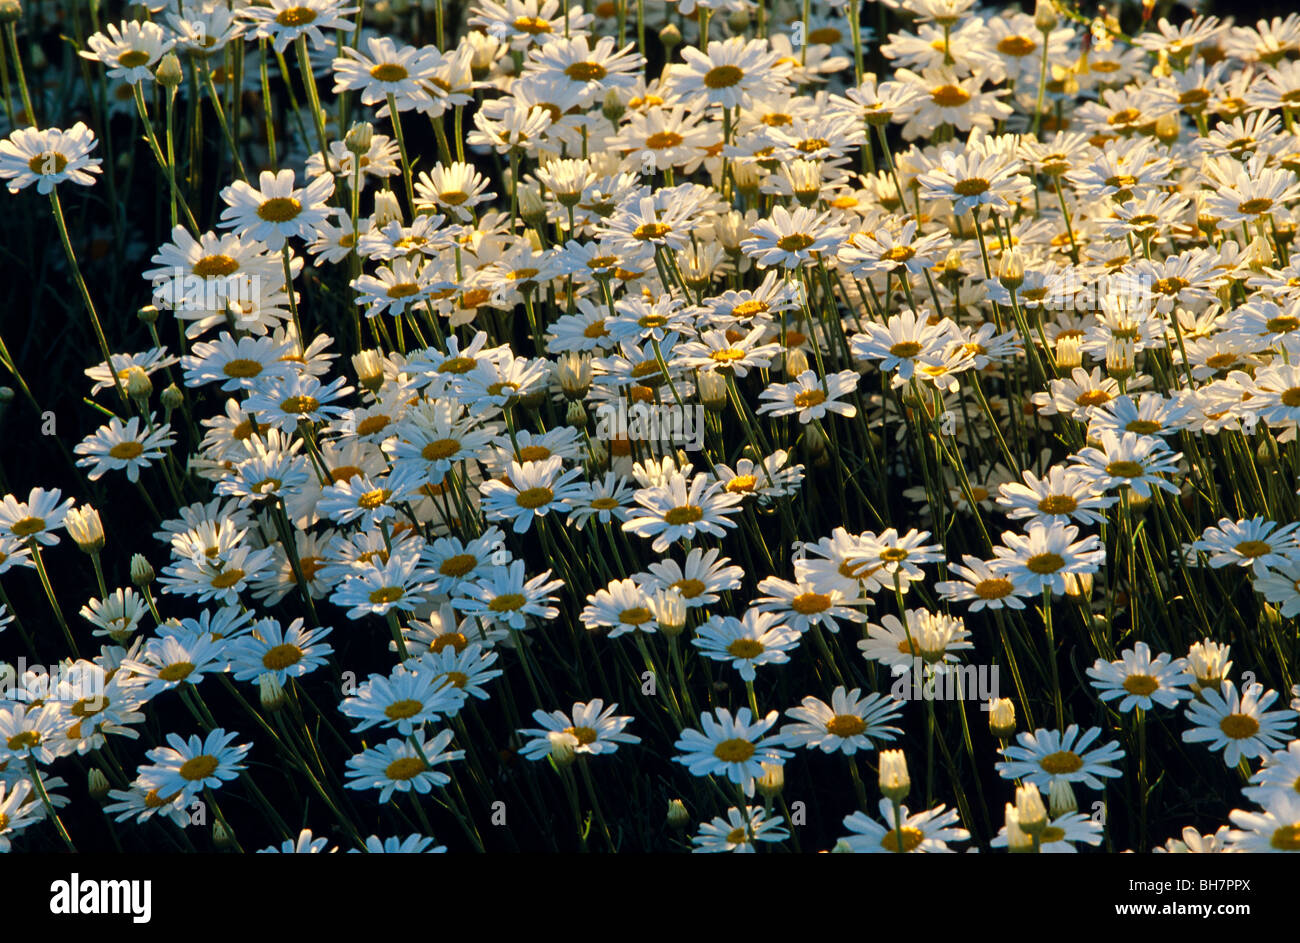 Pyrethrum crop in flower, Australia Stock Photo